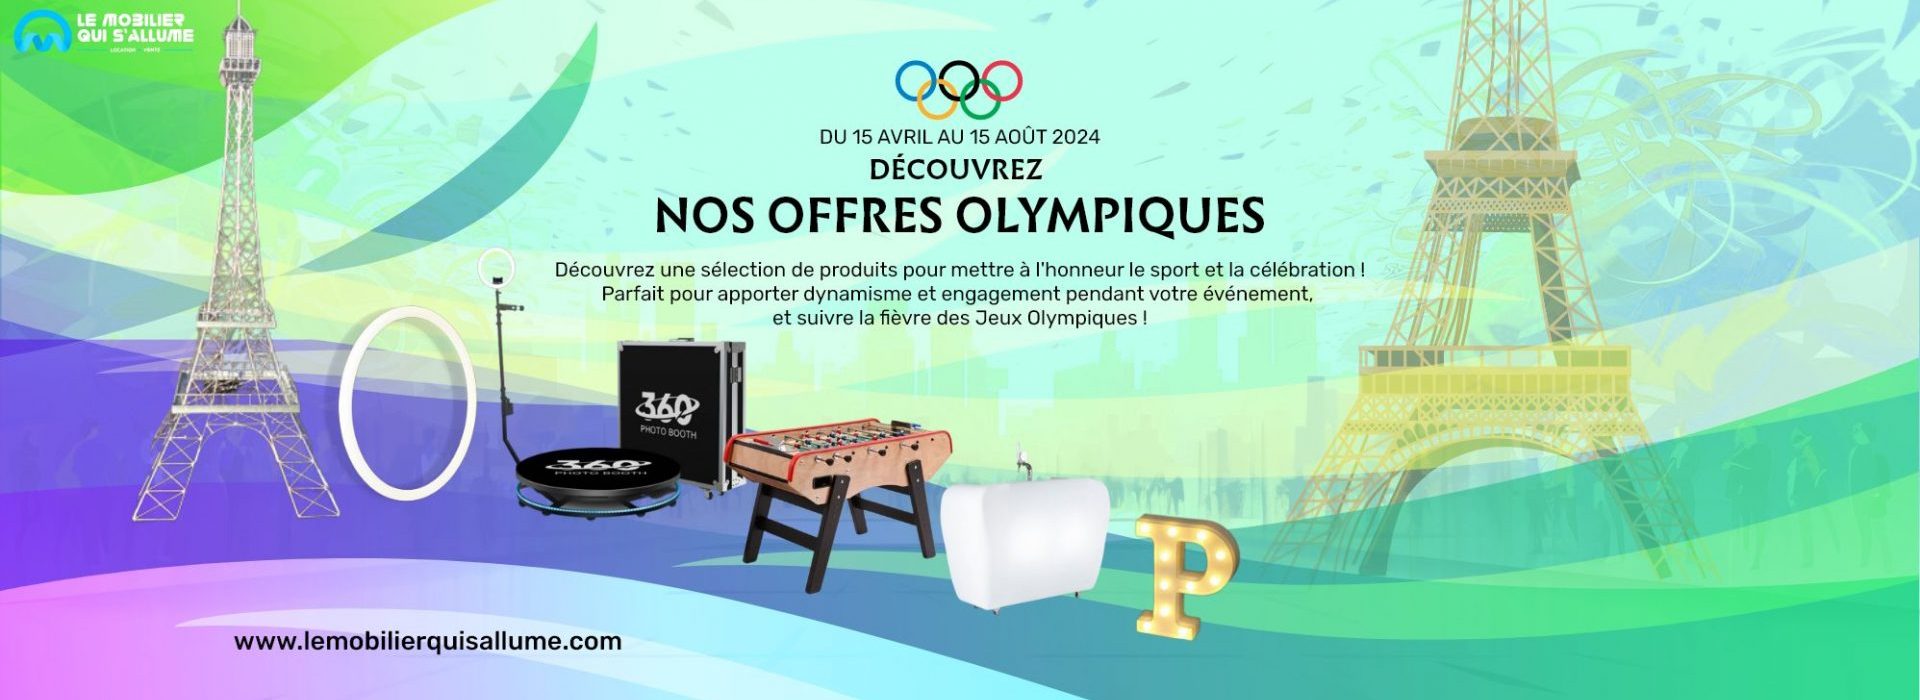 Nos offres olympiques pour les JO 2024 !